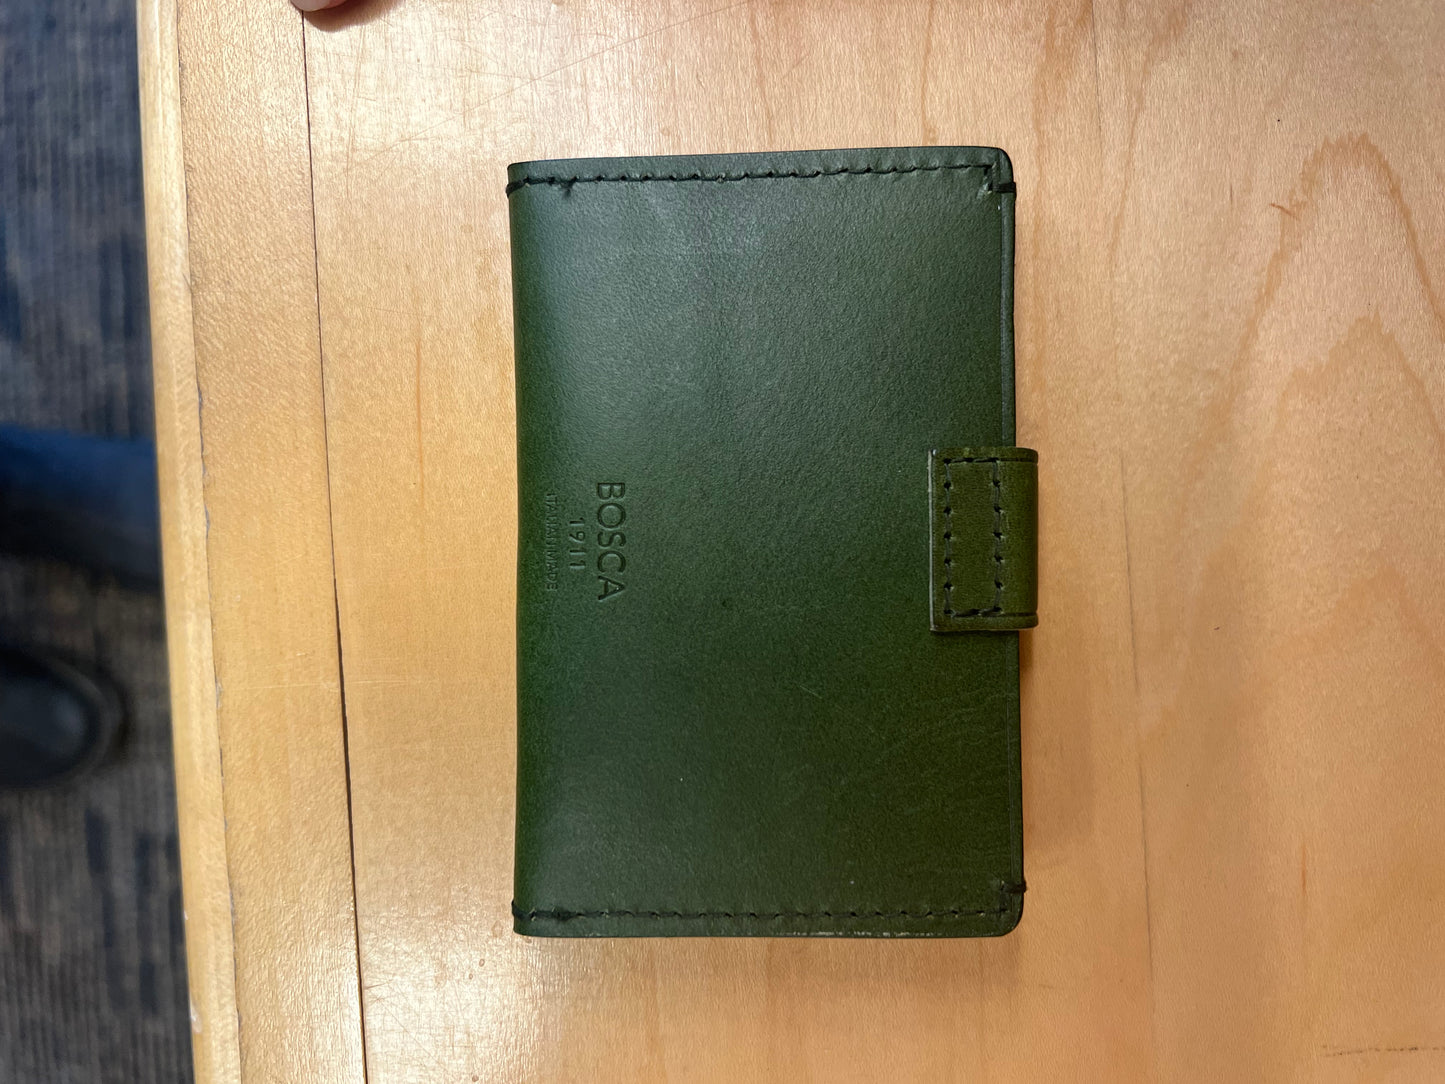 Bosca ITALO Tuck Tab Card Case Wallet (in Green, last one in stock)